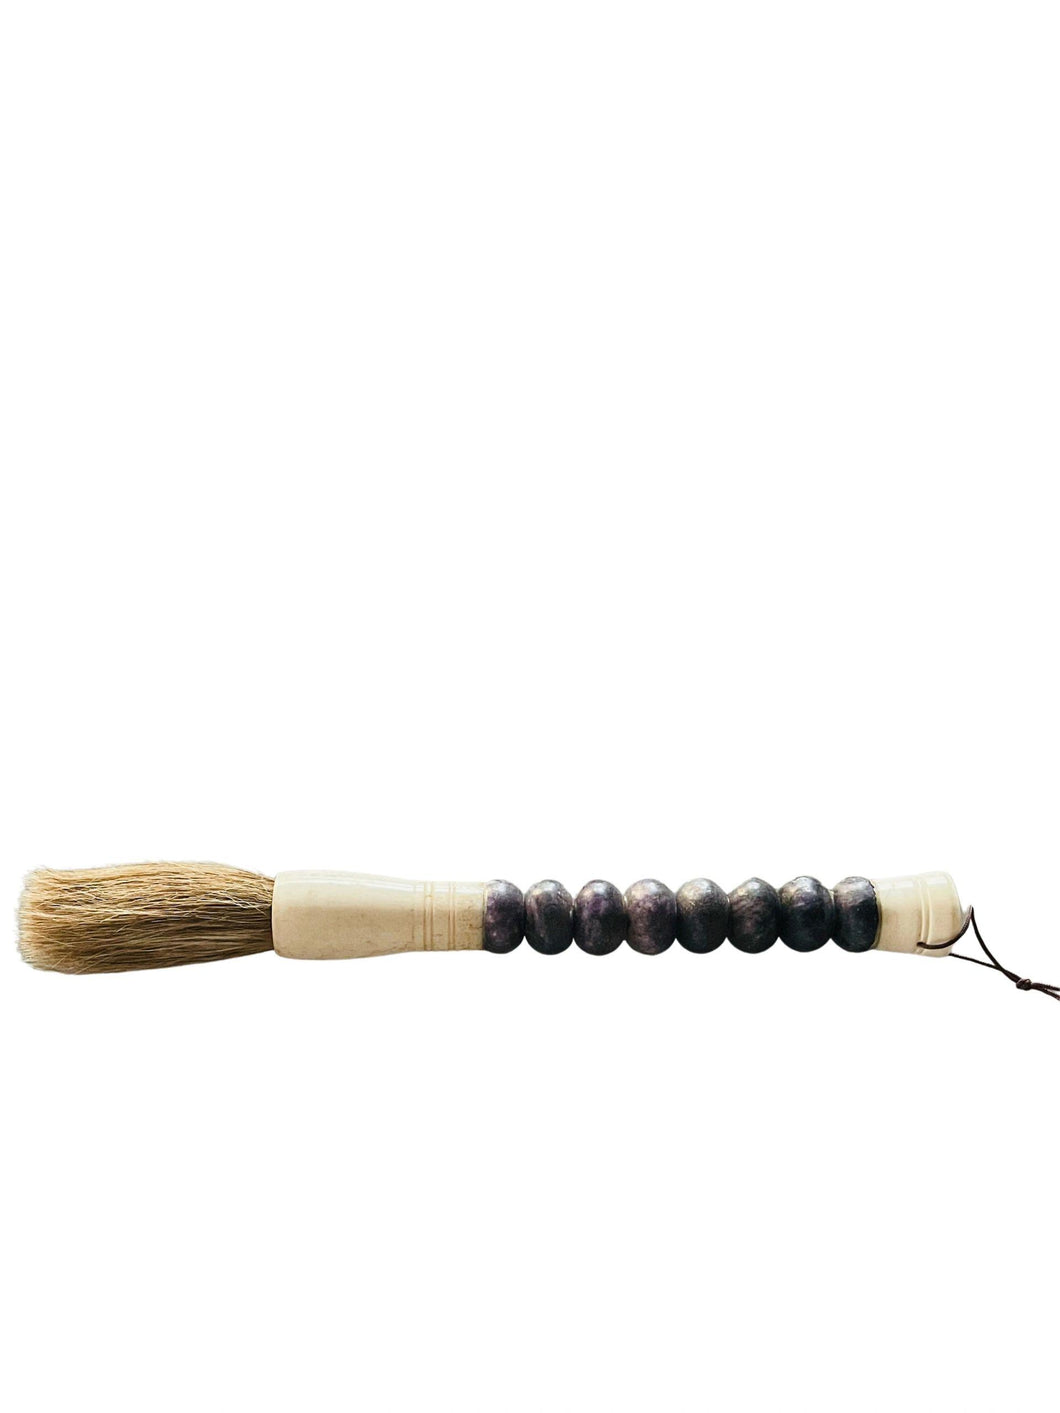 Calligraphy Brush, Purple Jade Abacus Beads, Medium